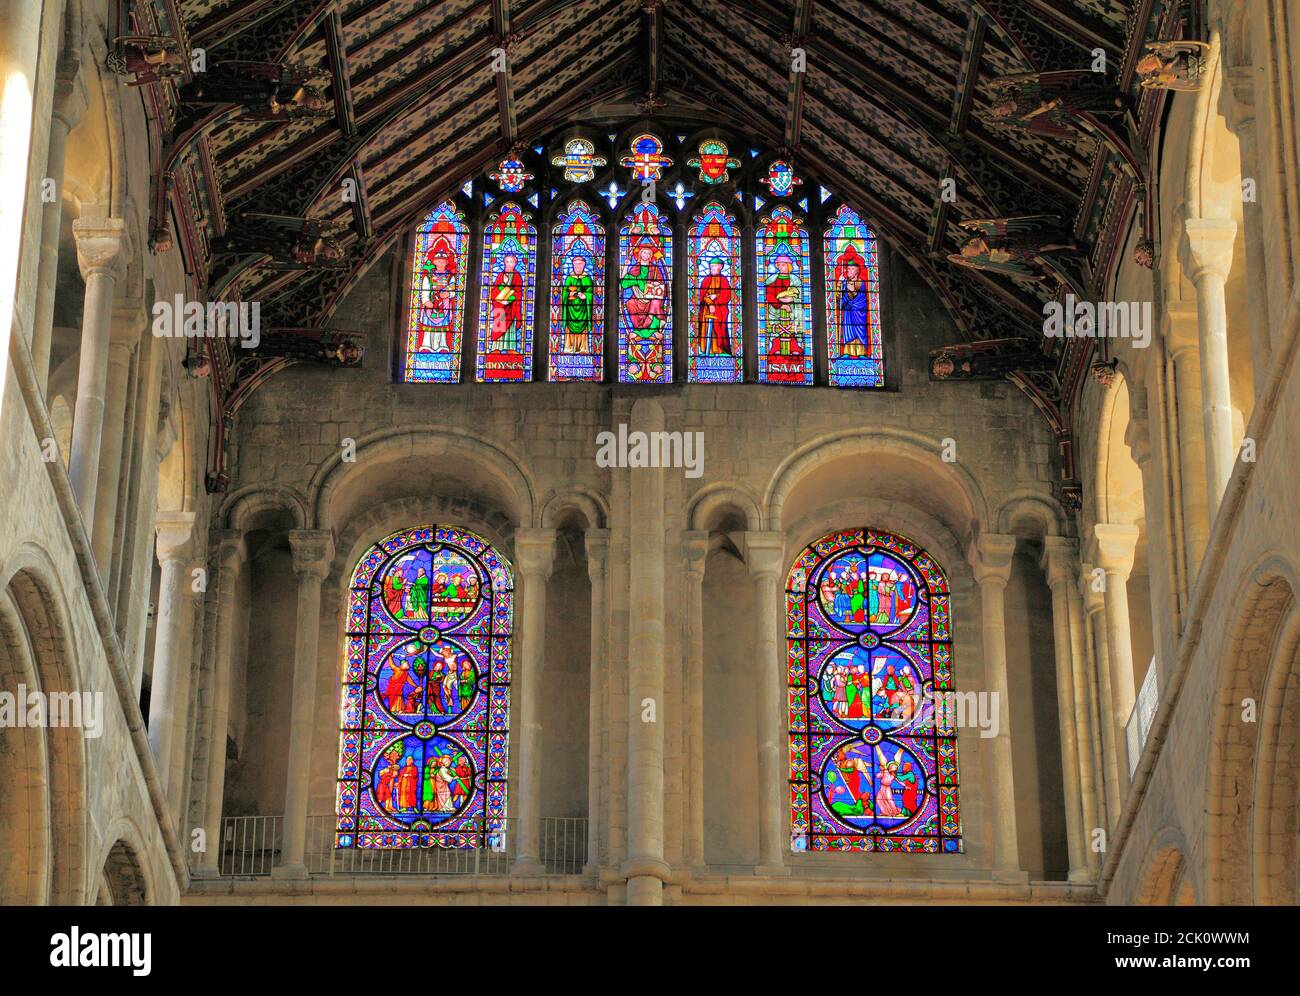 Ely Catedral, interior, transepto sur, arcos normandos abajo, primeros arcos ingleses arriba, vidrieras victorianas, ventanas, Cambridgeshire, Inglaterra Foto de stock